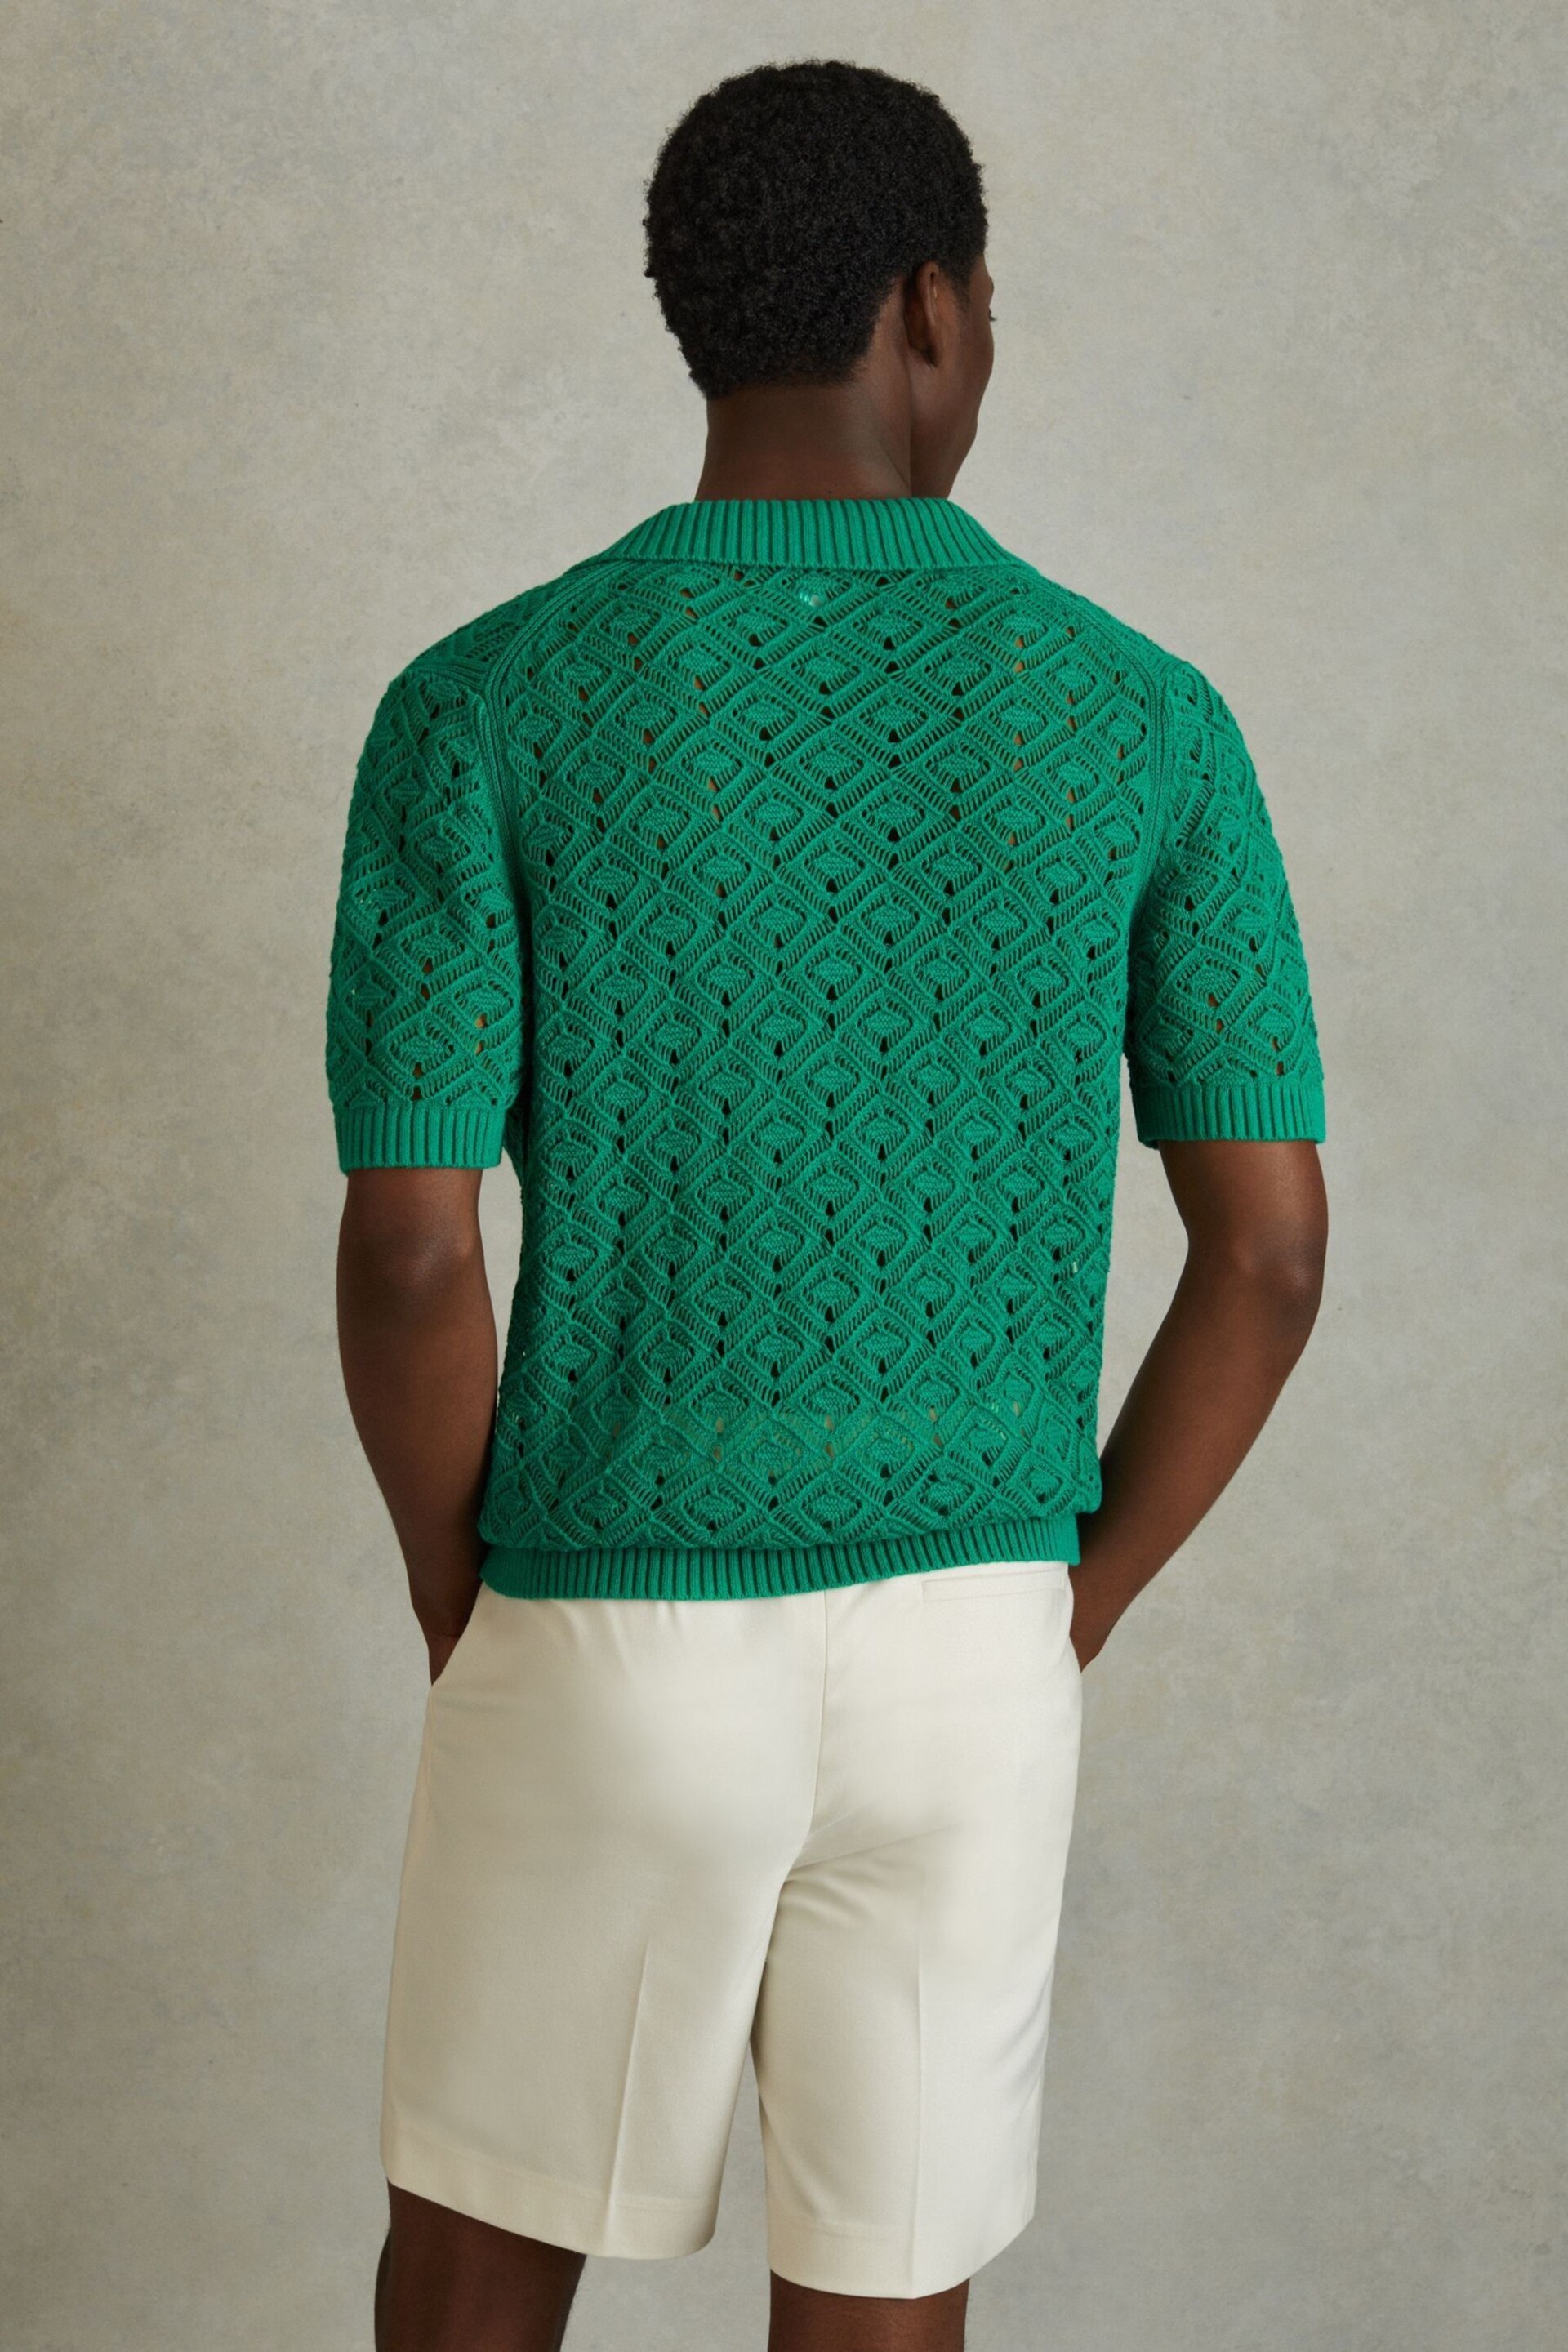 Reiss Bright Green Corsica Crochet Cuban Collar Shirt - Image 4 of 5